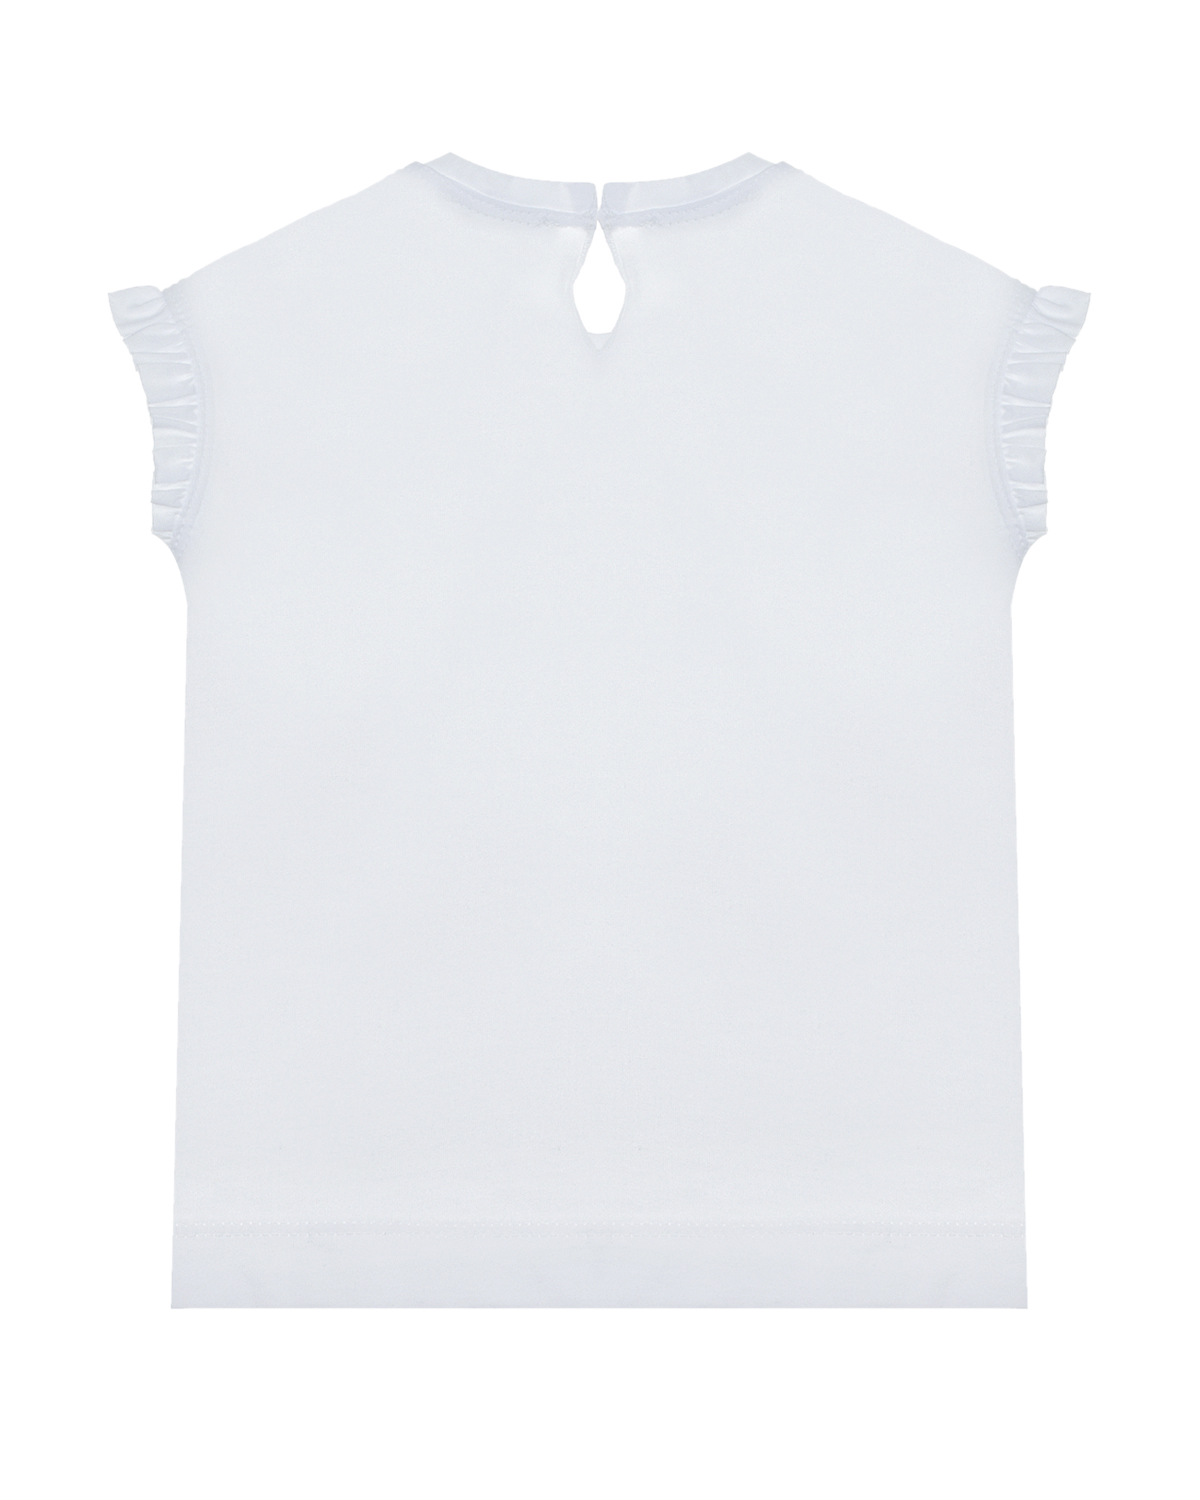 Белая футболка с принтом "ожерелье" Monnalisa детская, размер 92, цвет белый - фото 2